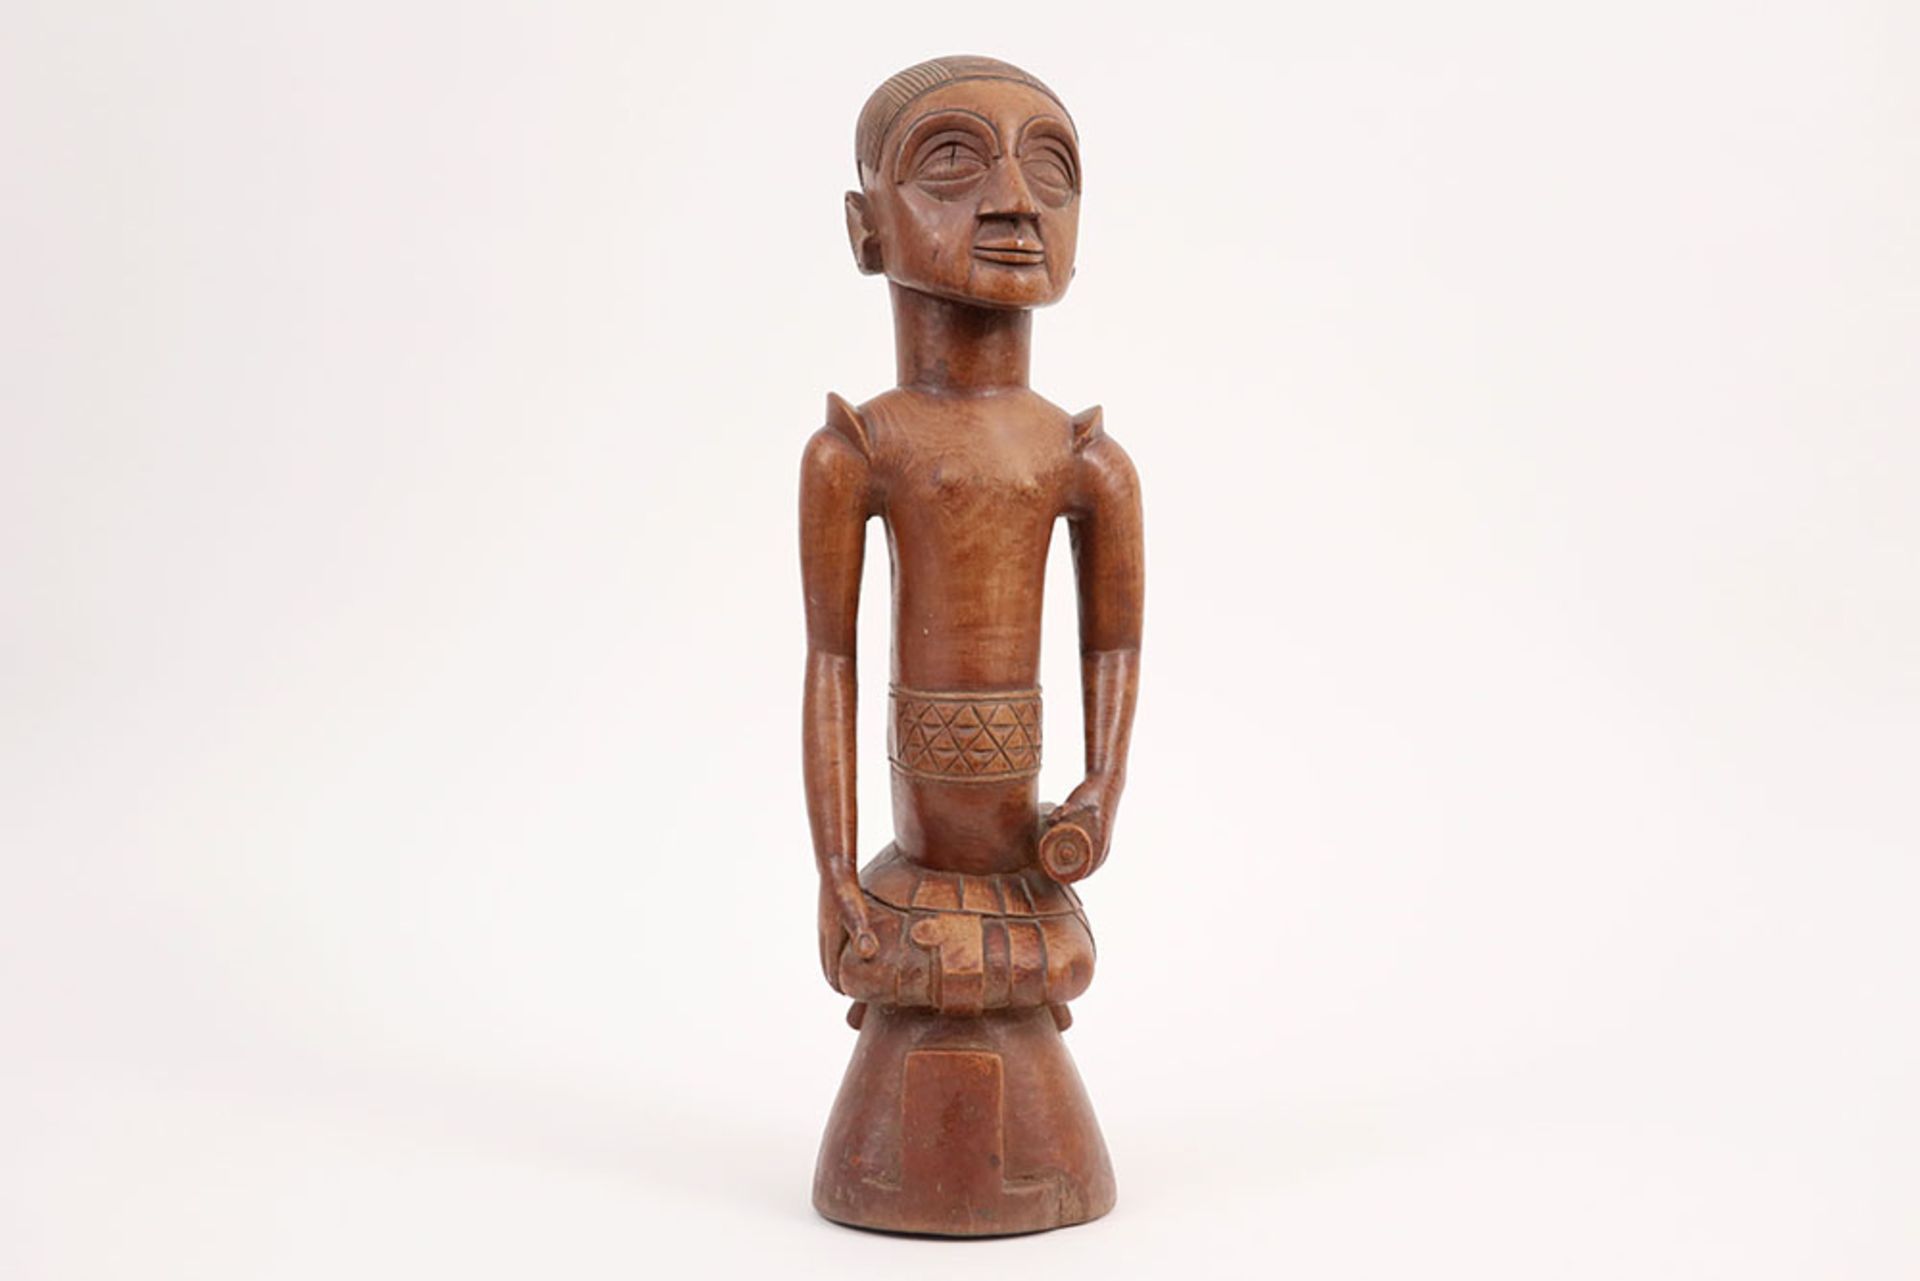 20th Cent. Congolese carver sculpture in wood || AFRIKA / KONGO - 20° EEUW sculptuur in hout met